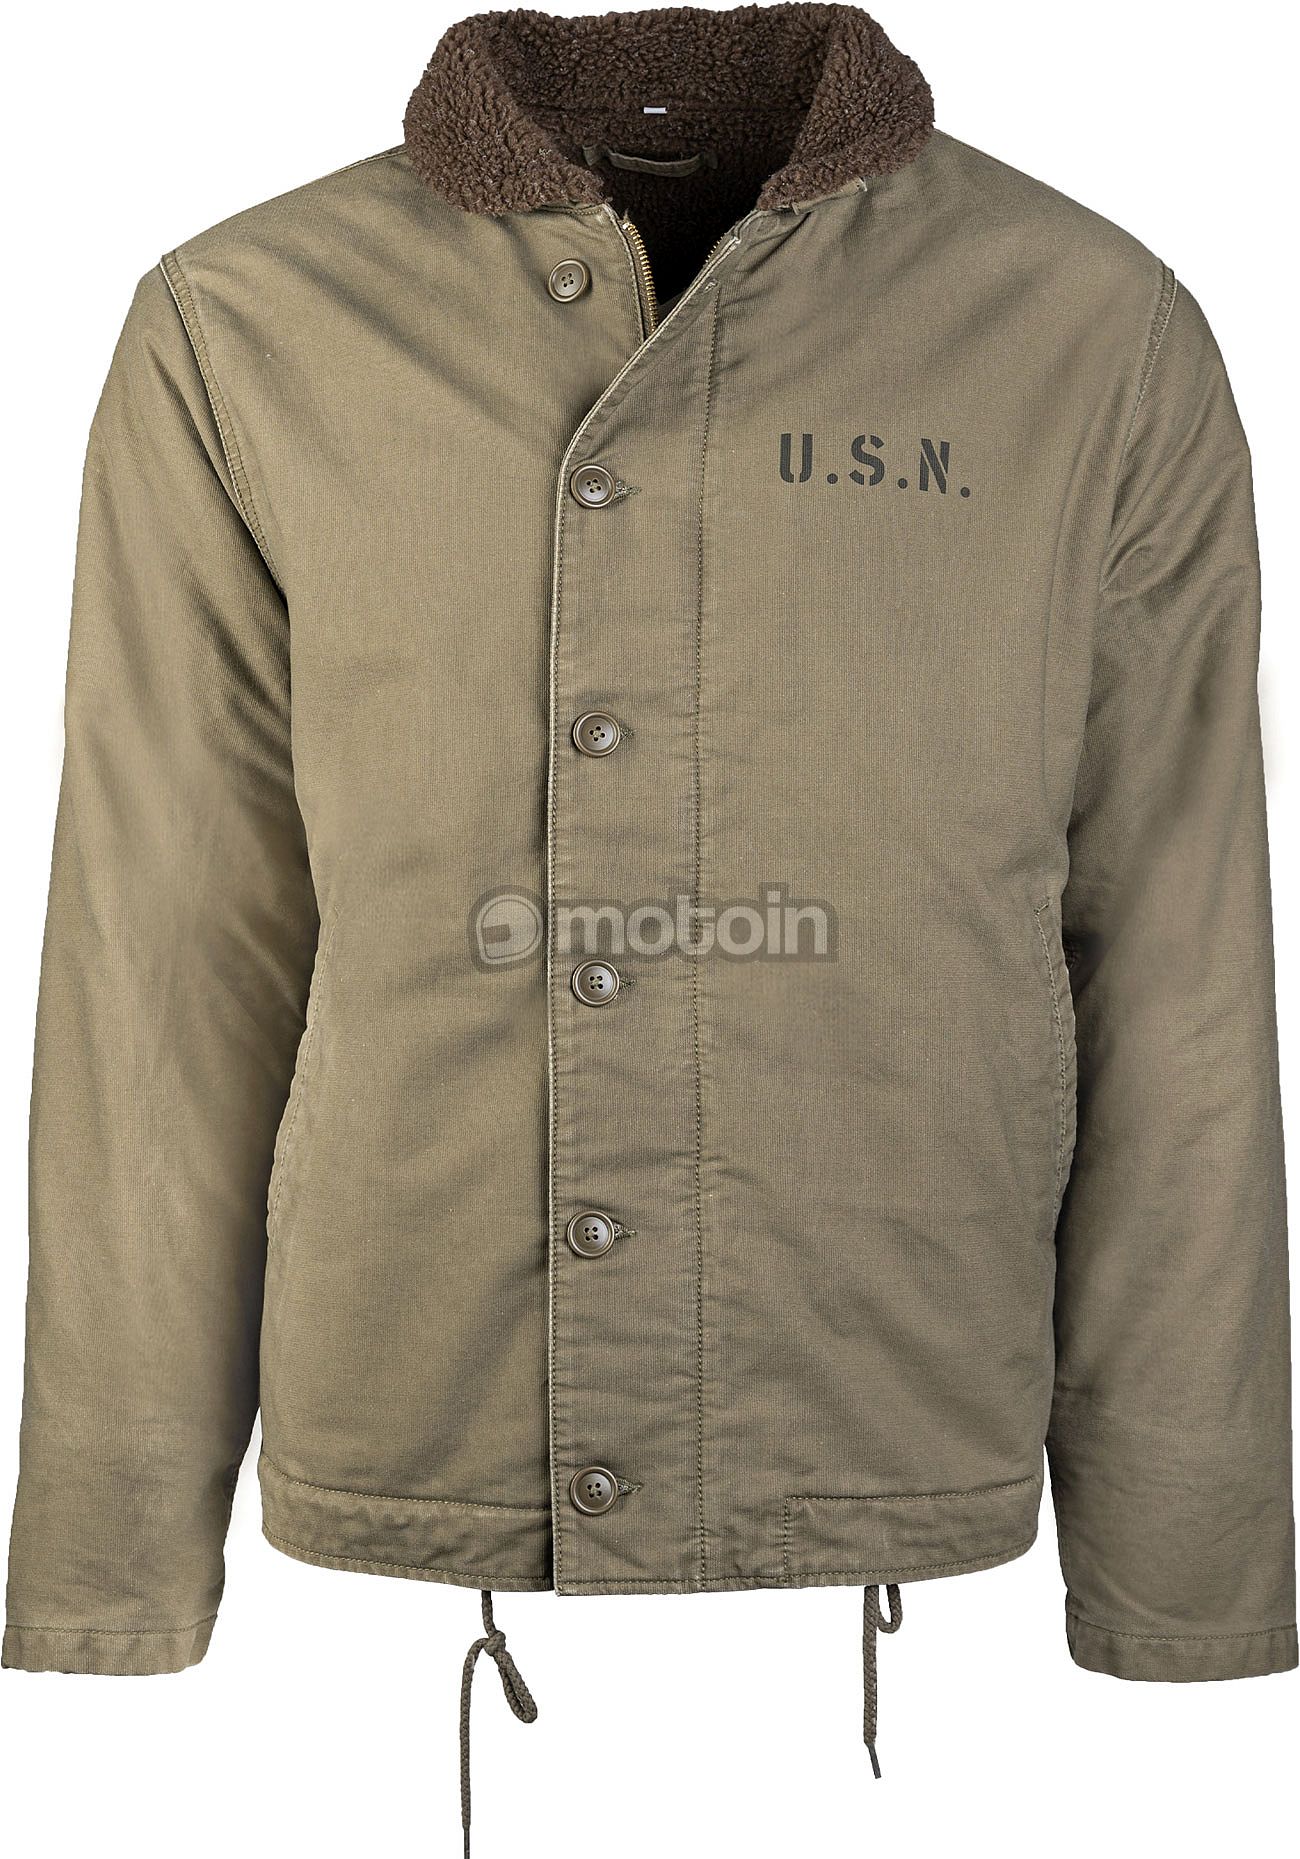 Deck jacket US Mil-Tec N-1, Navy textile